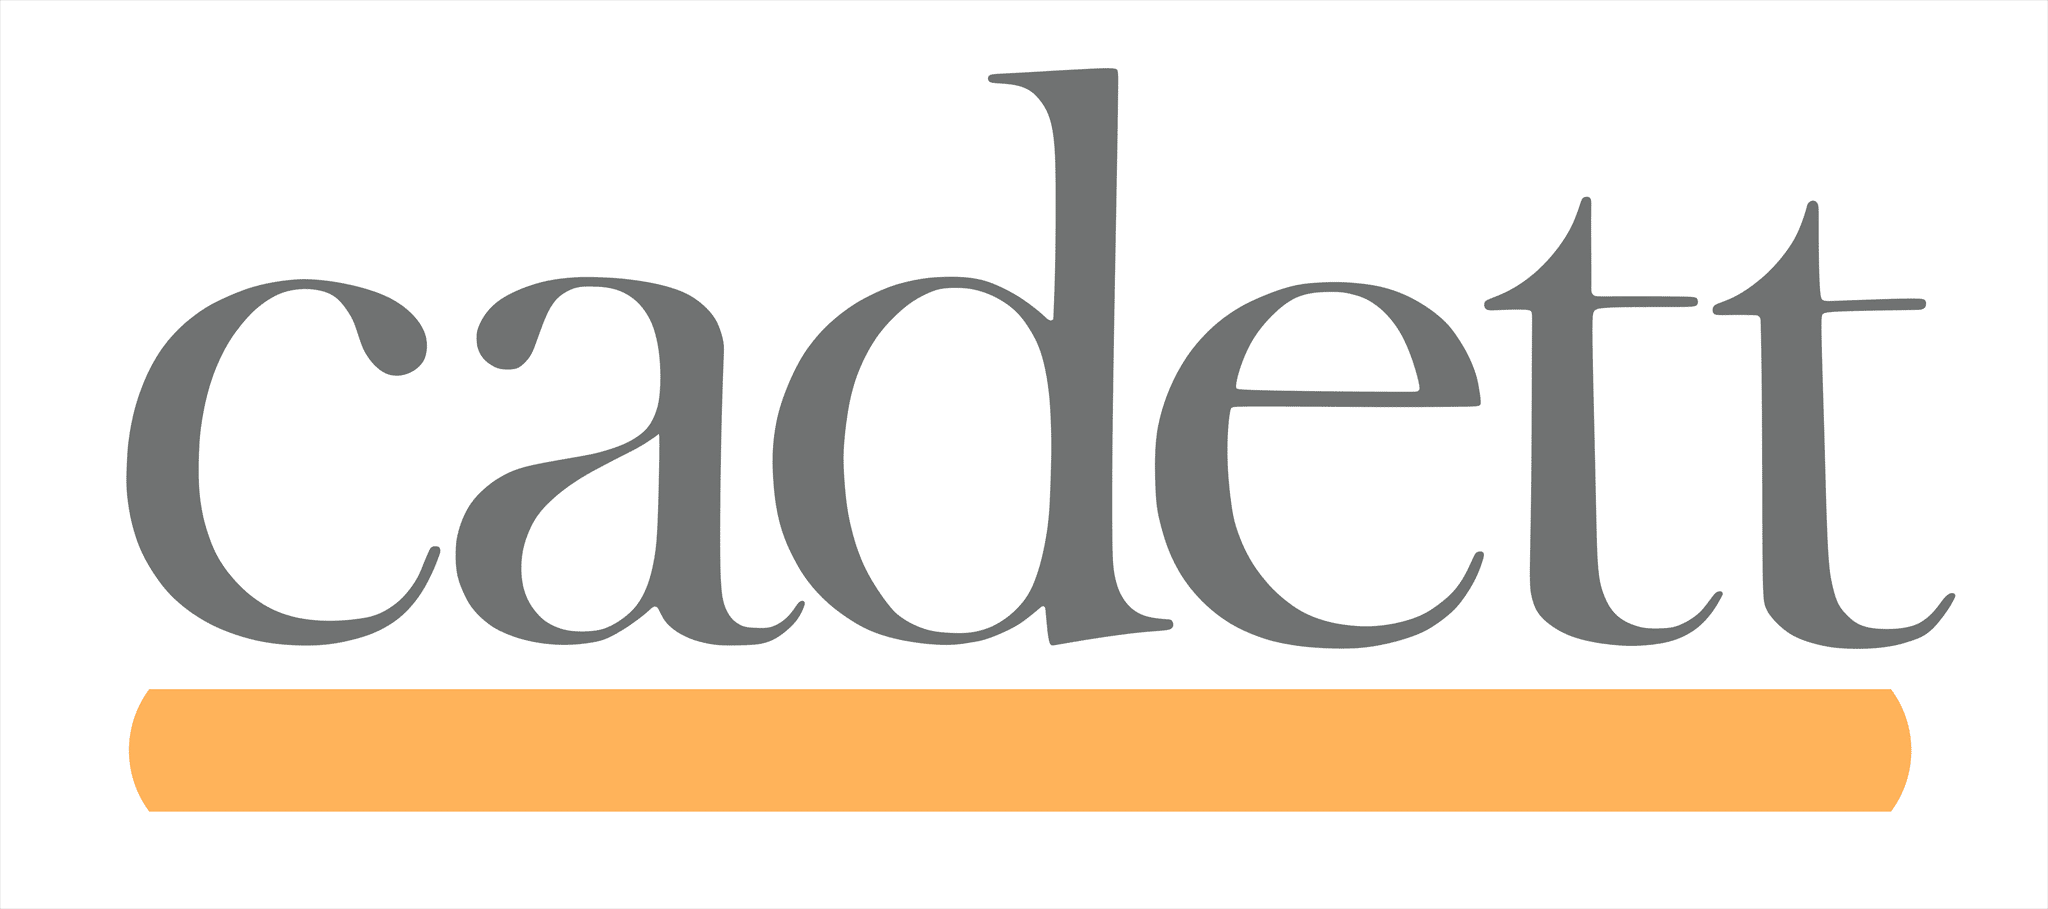 cadett logo